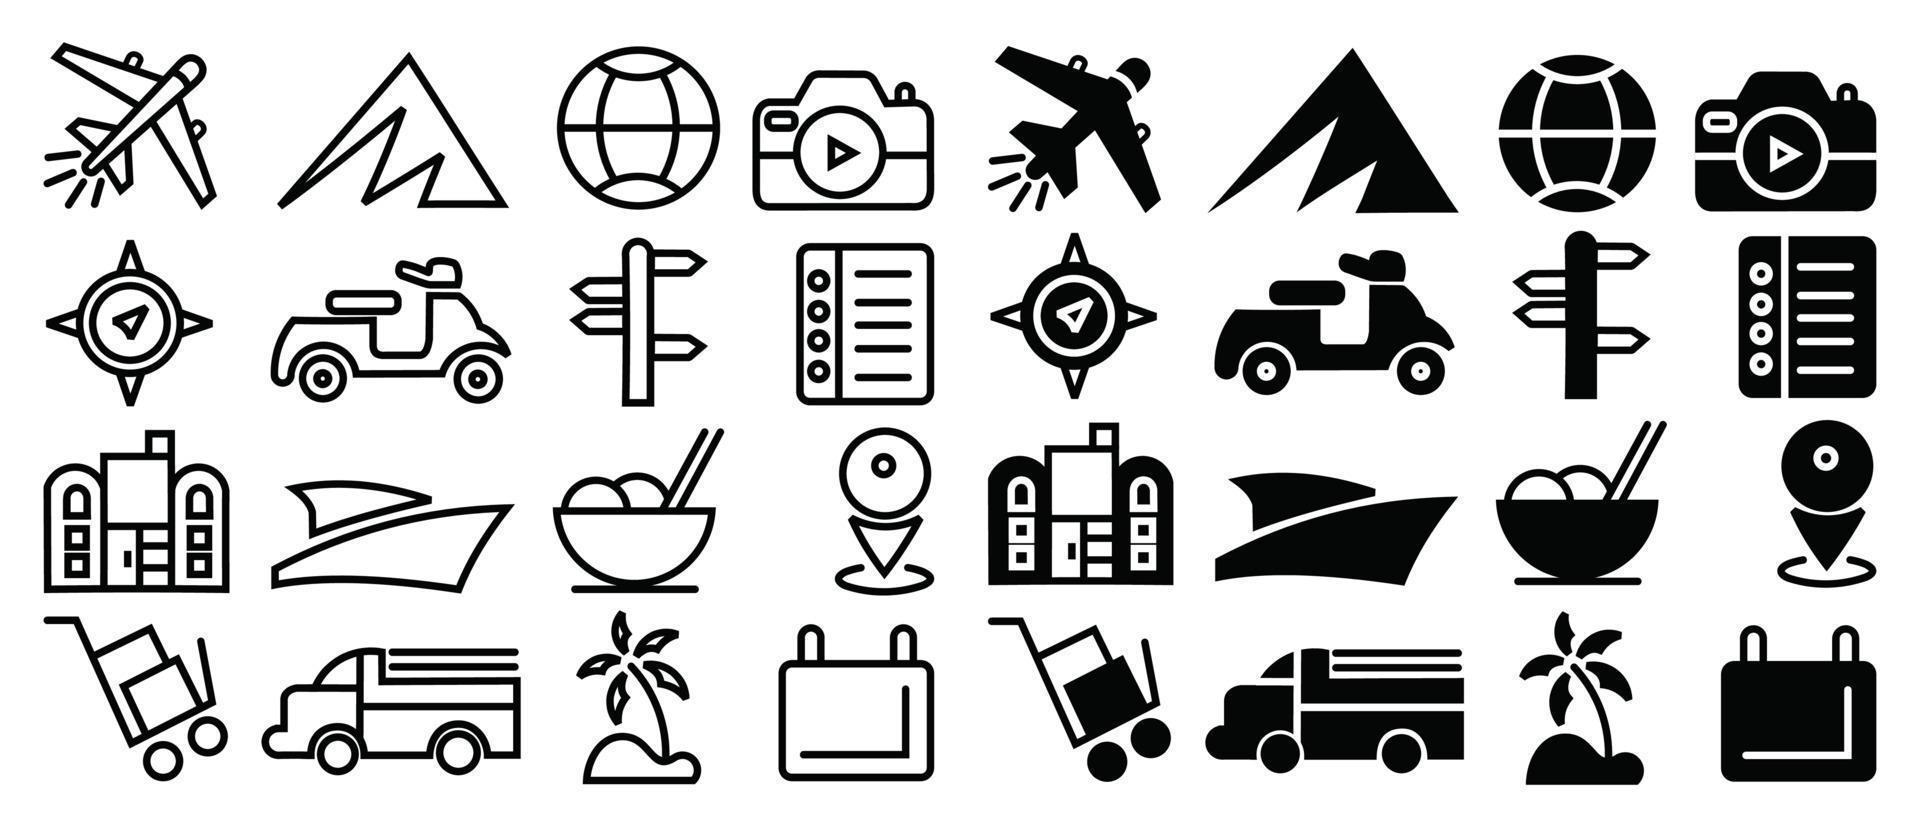 ligne épaisse de voyage de tourisme de vacances, icônes de voyage définies collection d'icônes simples de tourisme vecteur